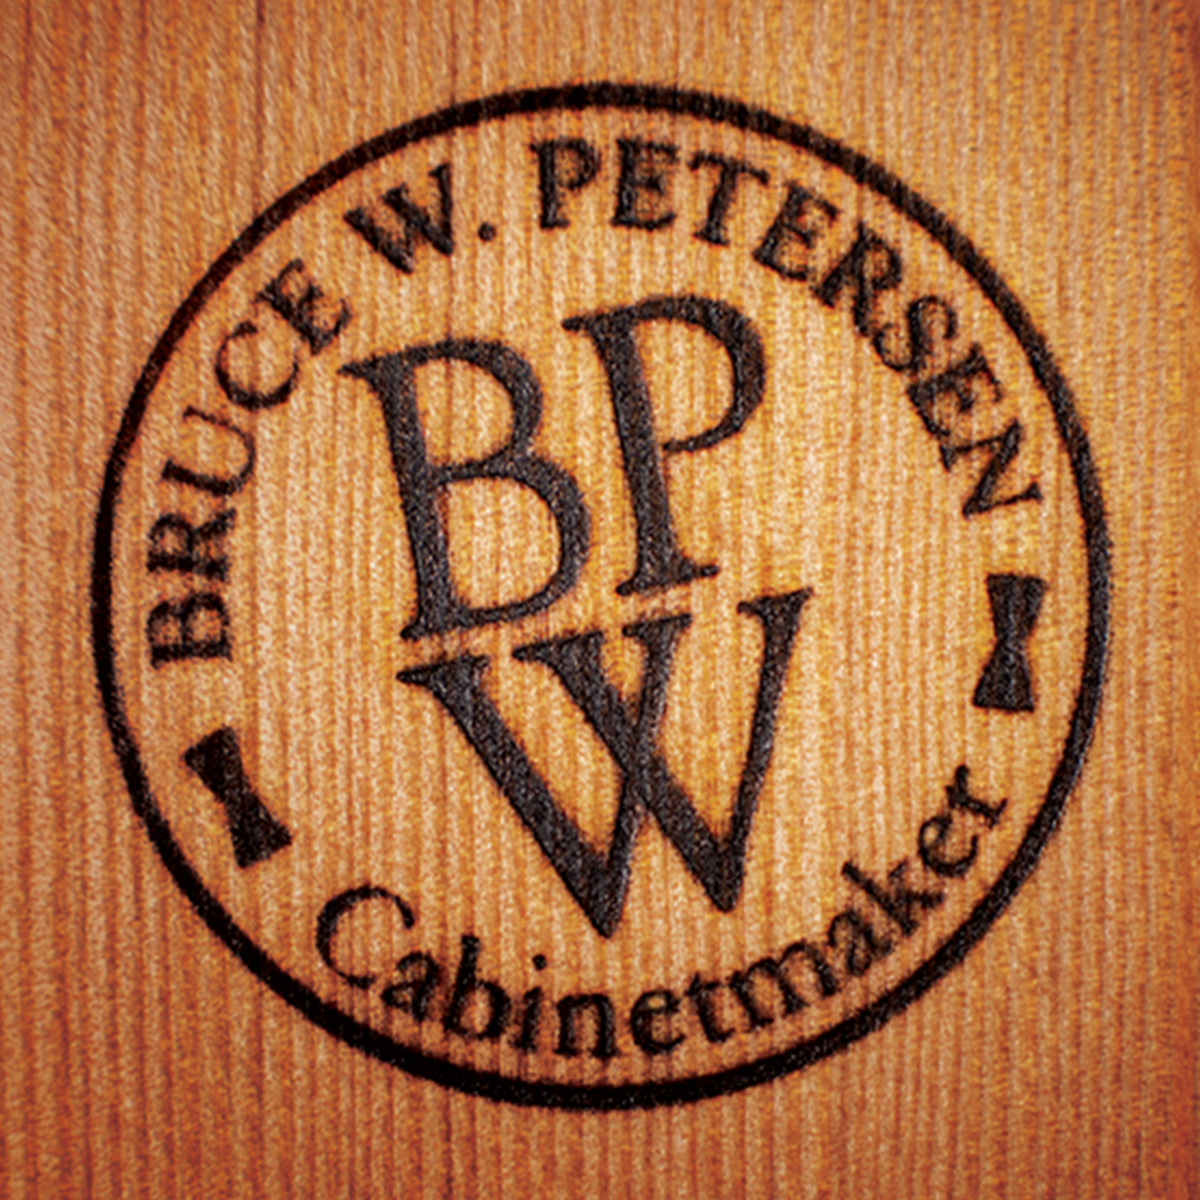 bwp_logo.png